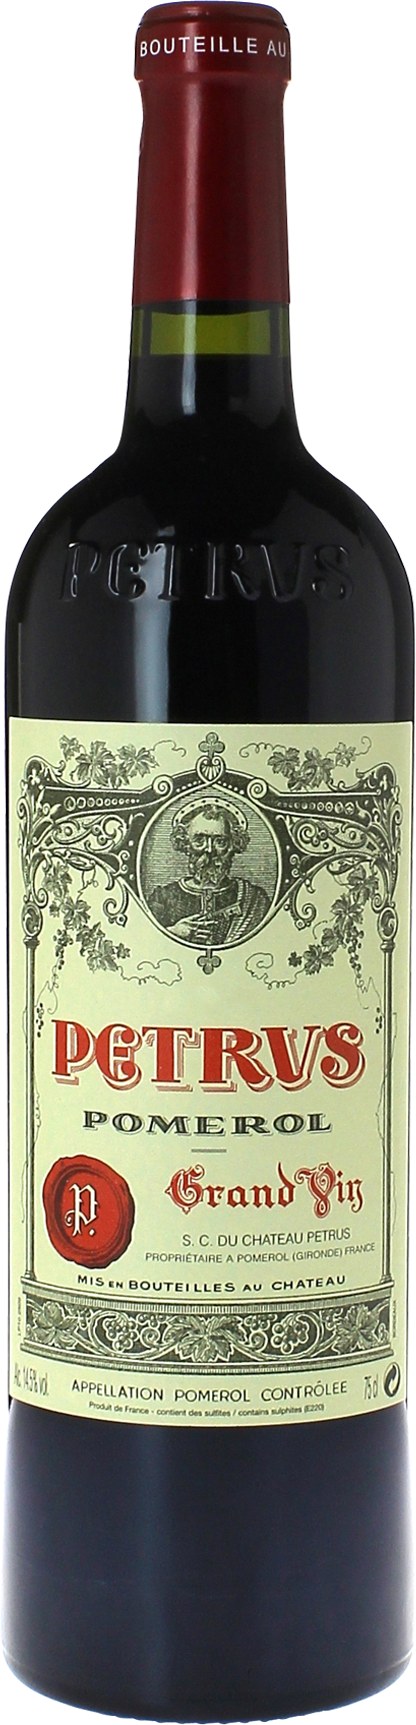 Petrus 1996